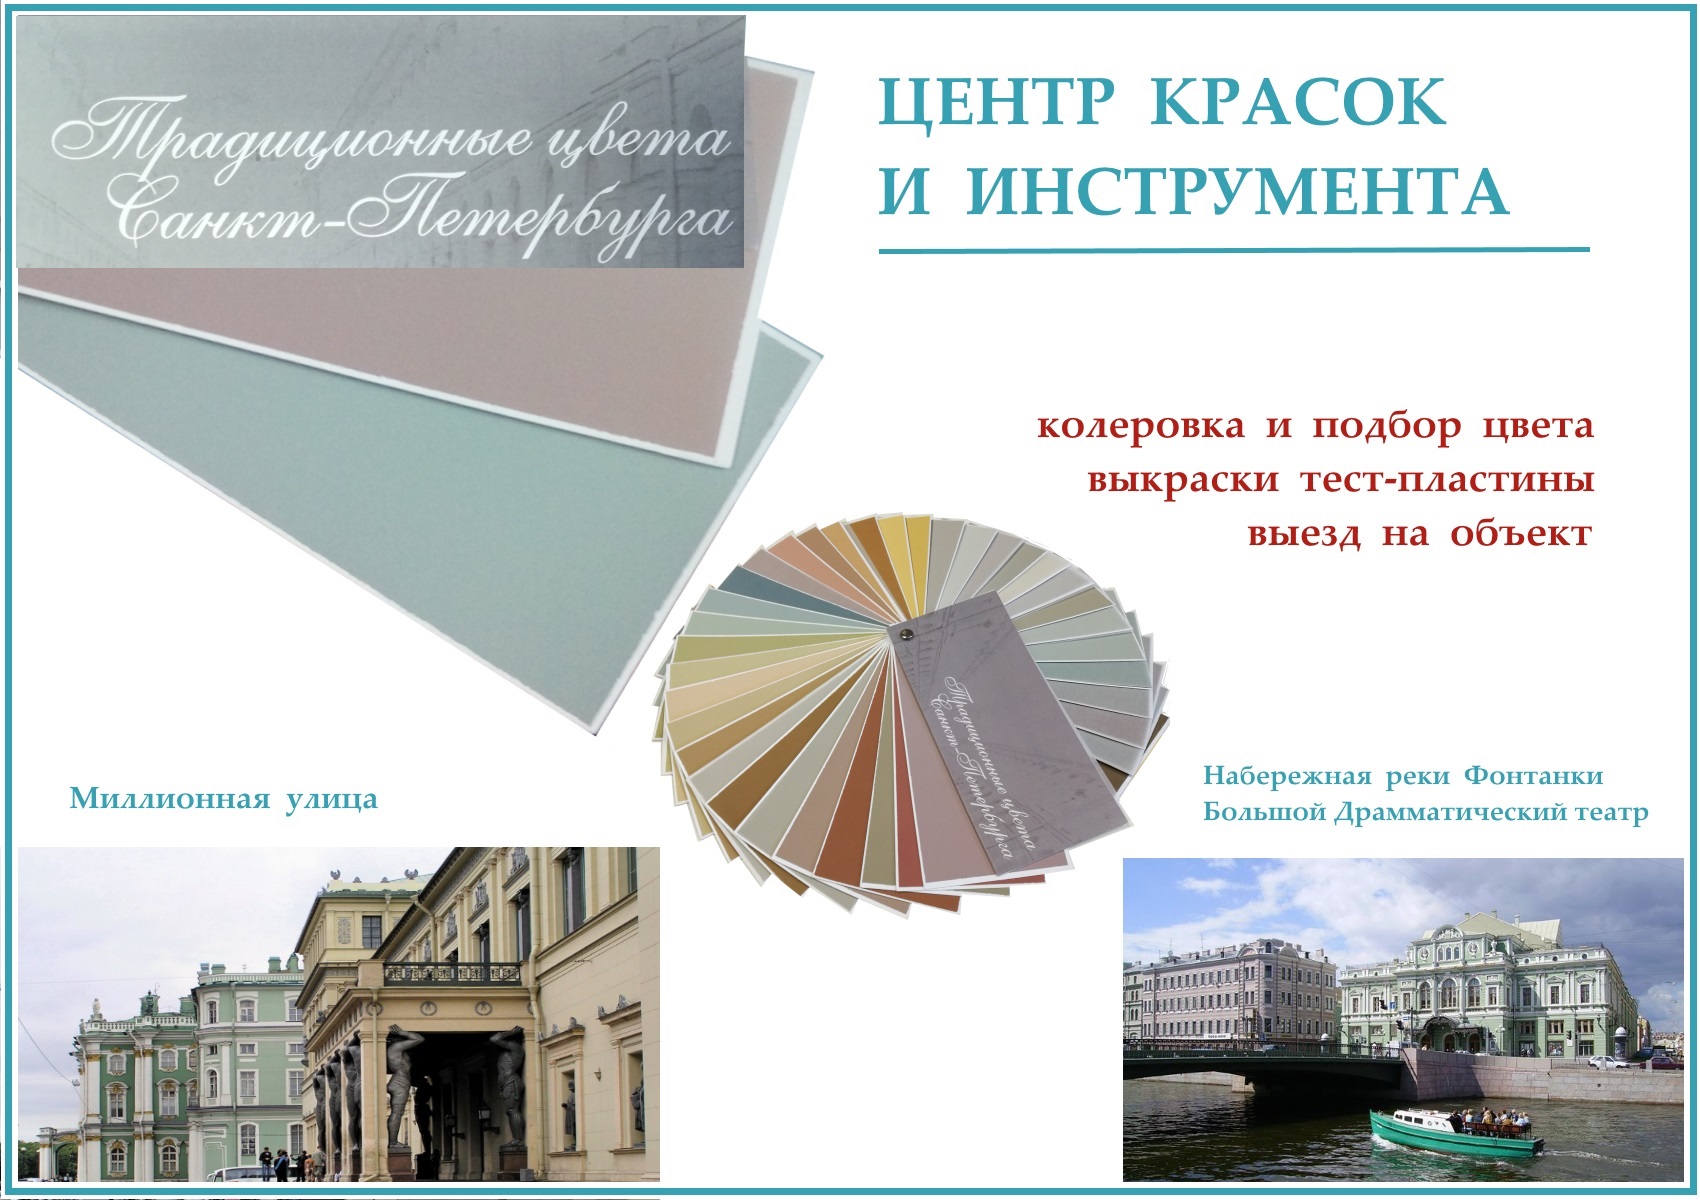 Достойные цвета для великолепной архитектуры города и пригородов Санкт-Петербурга.